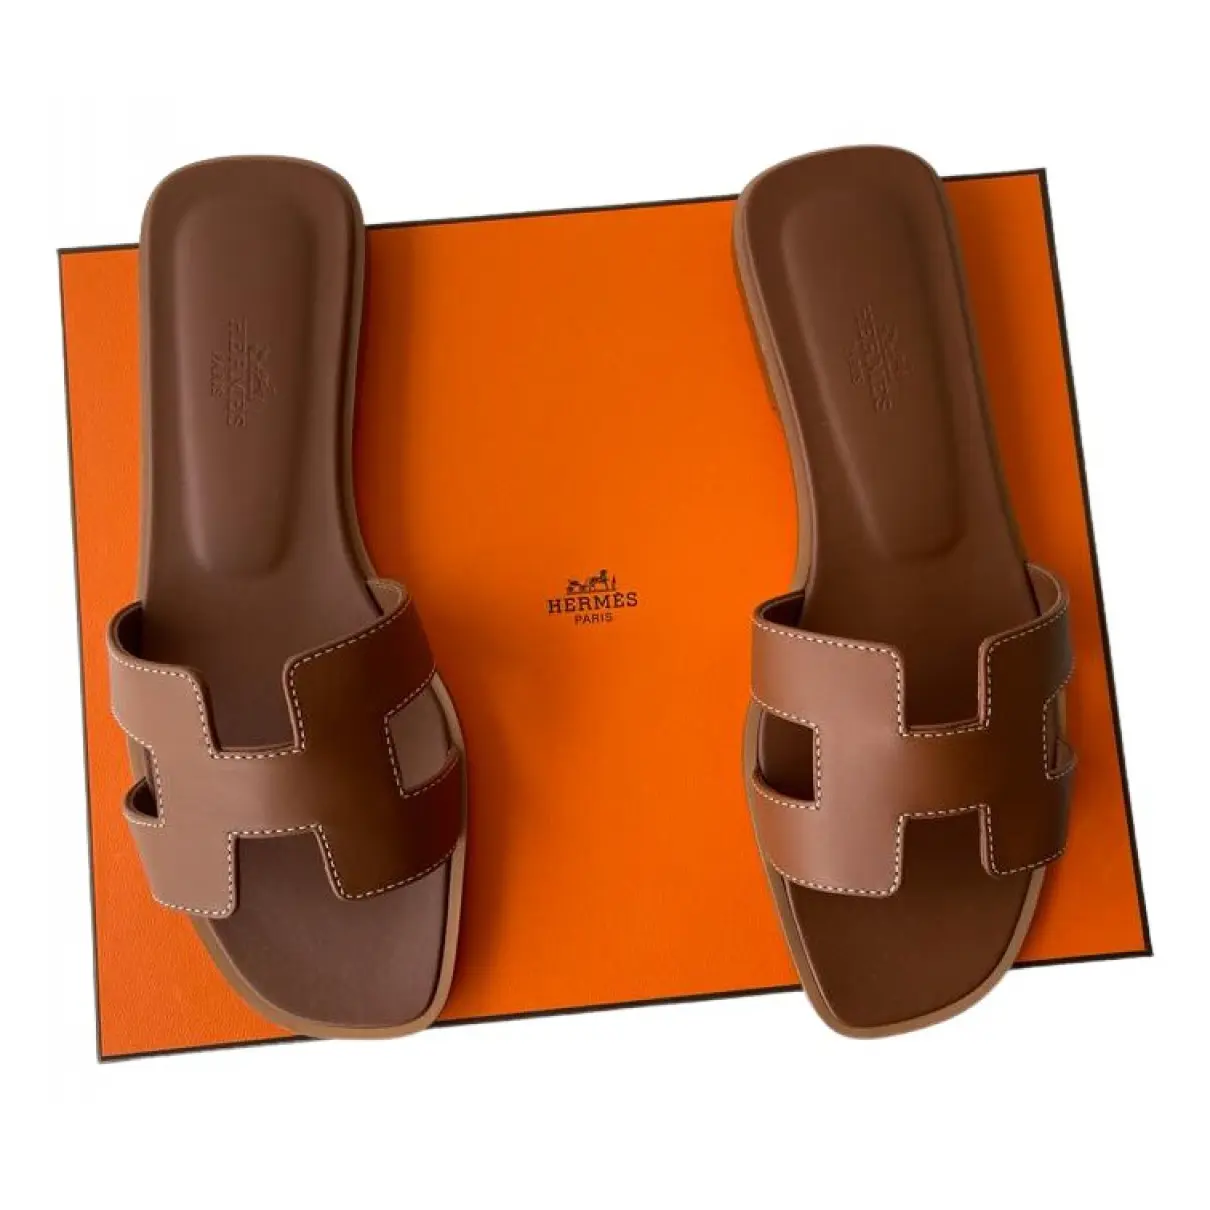 Oran leather mules Hermès